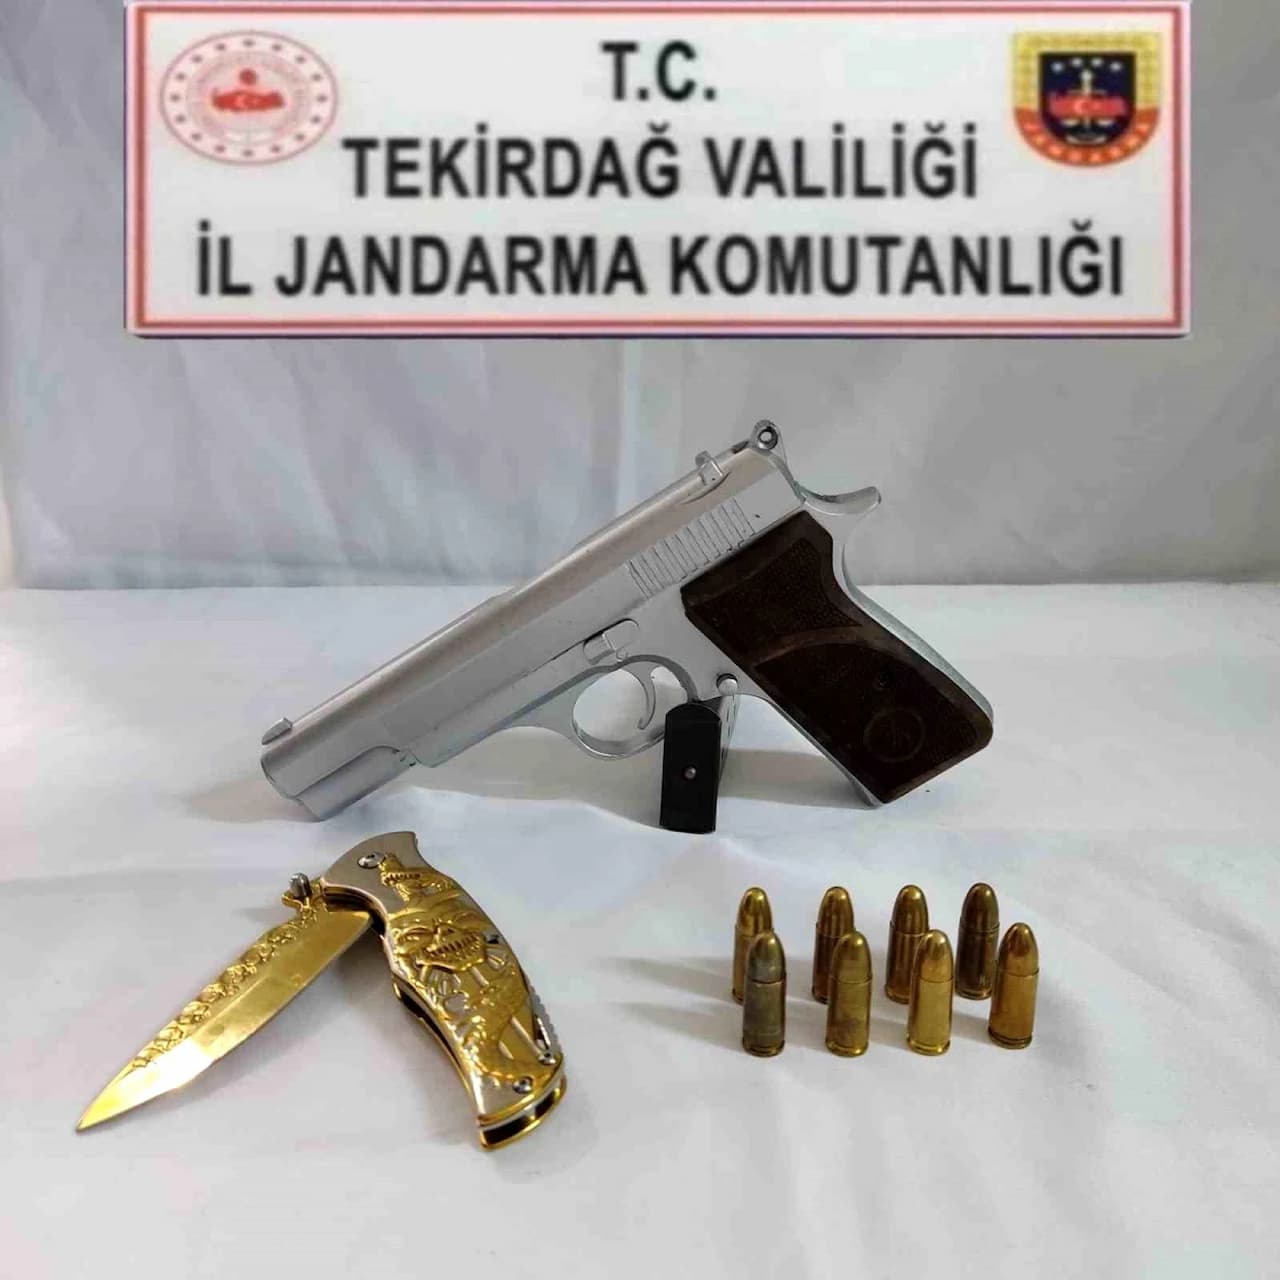 Tekirdağ'da Şaşırtan Operasyon: Araçta Gizlenmiş Silah ve Bıçaklar Bulundu!